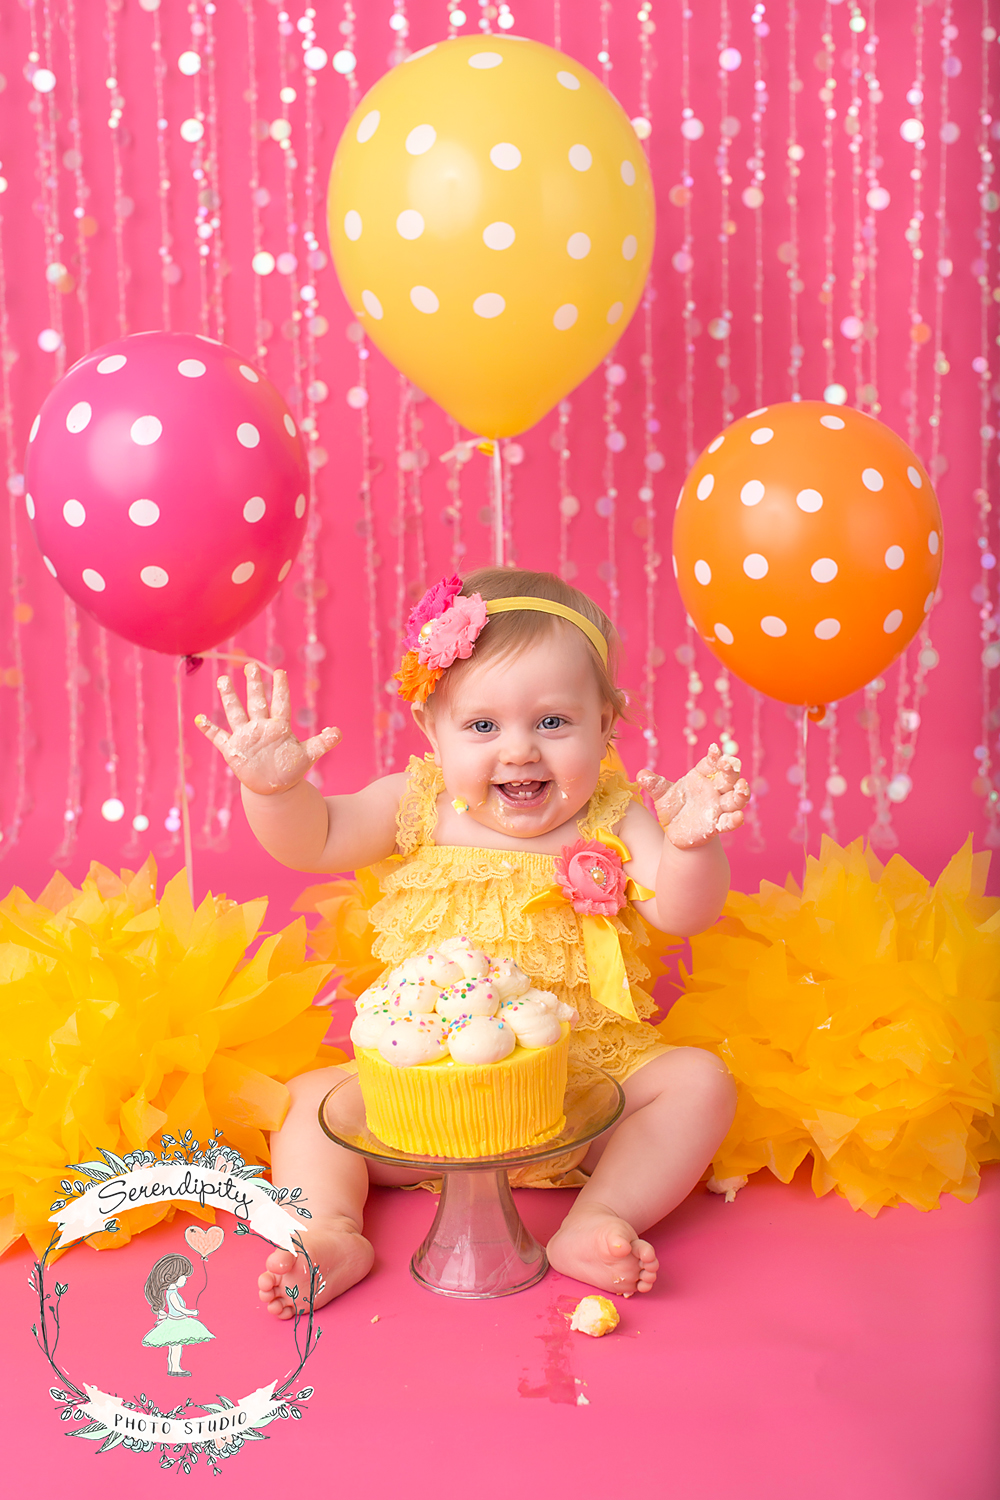 4-smiling-baby-cake-smash-pink-yellow